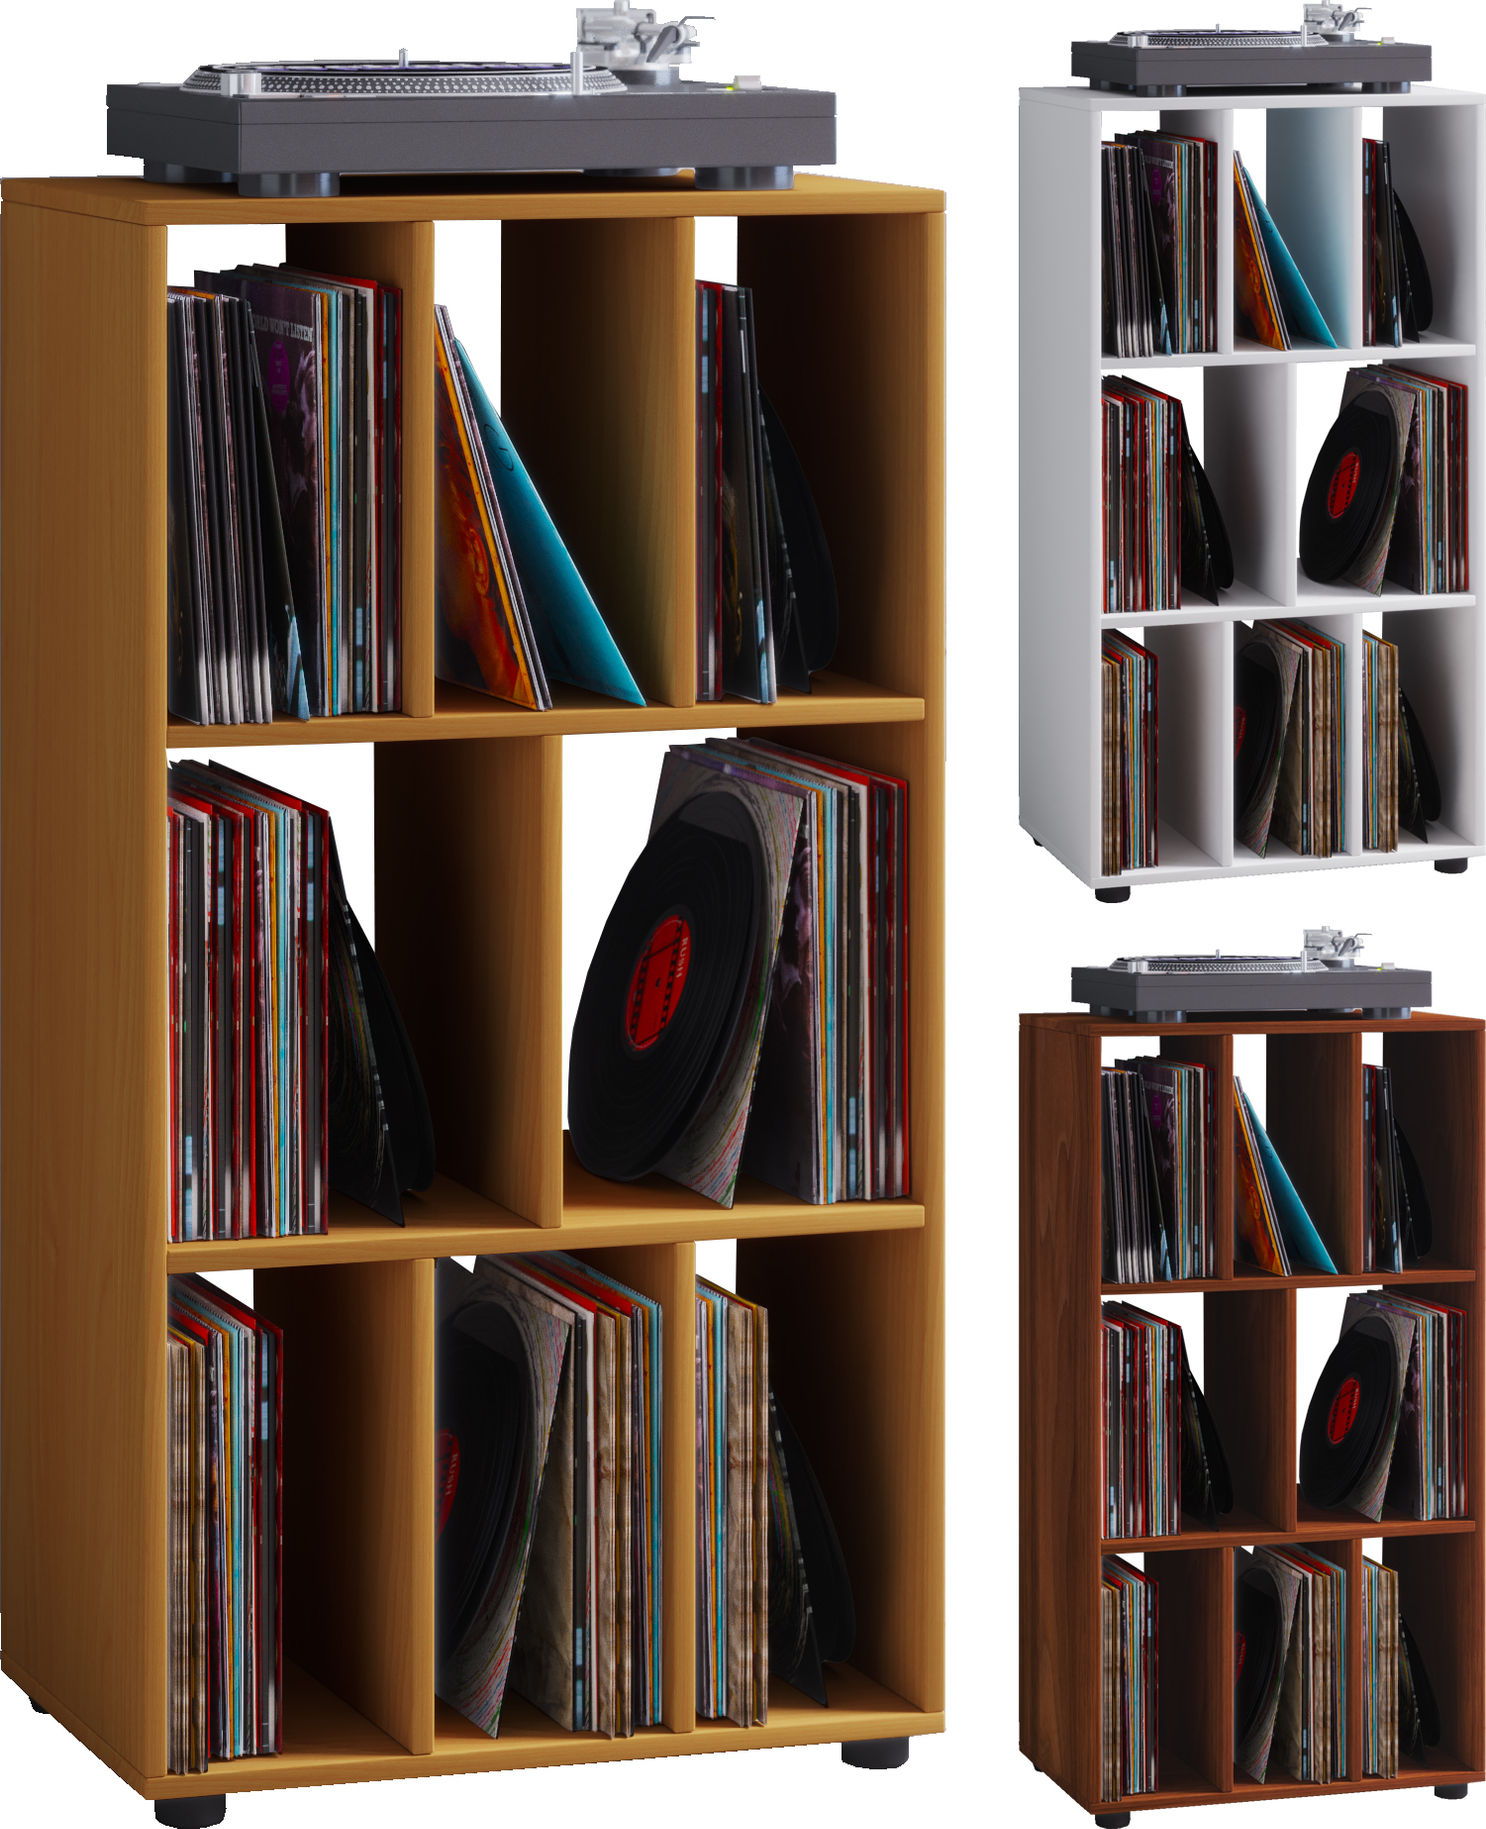 VCM Schallplatten Regal Archiv LP Möbel Archivierung Schaltino VCM  Schallplattenregal Schaltino Farbe: Weiß | Weltbild.de